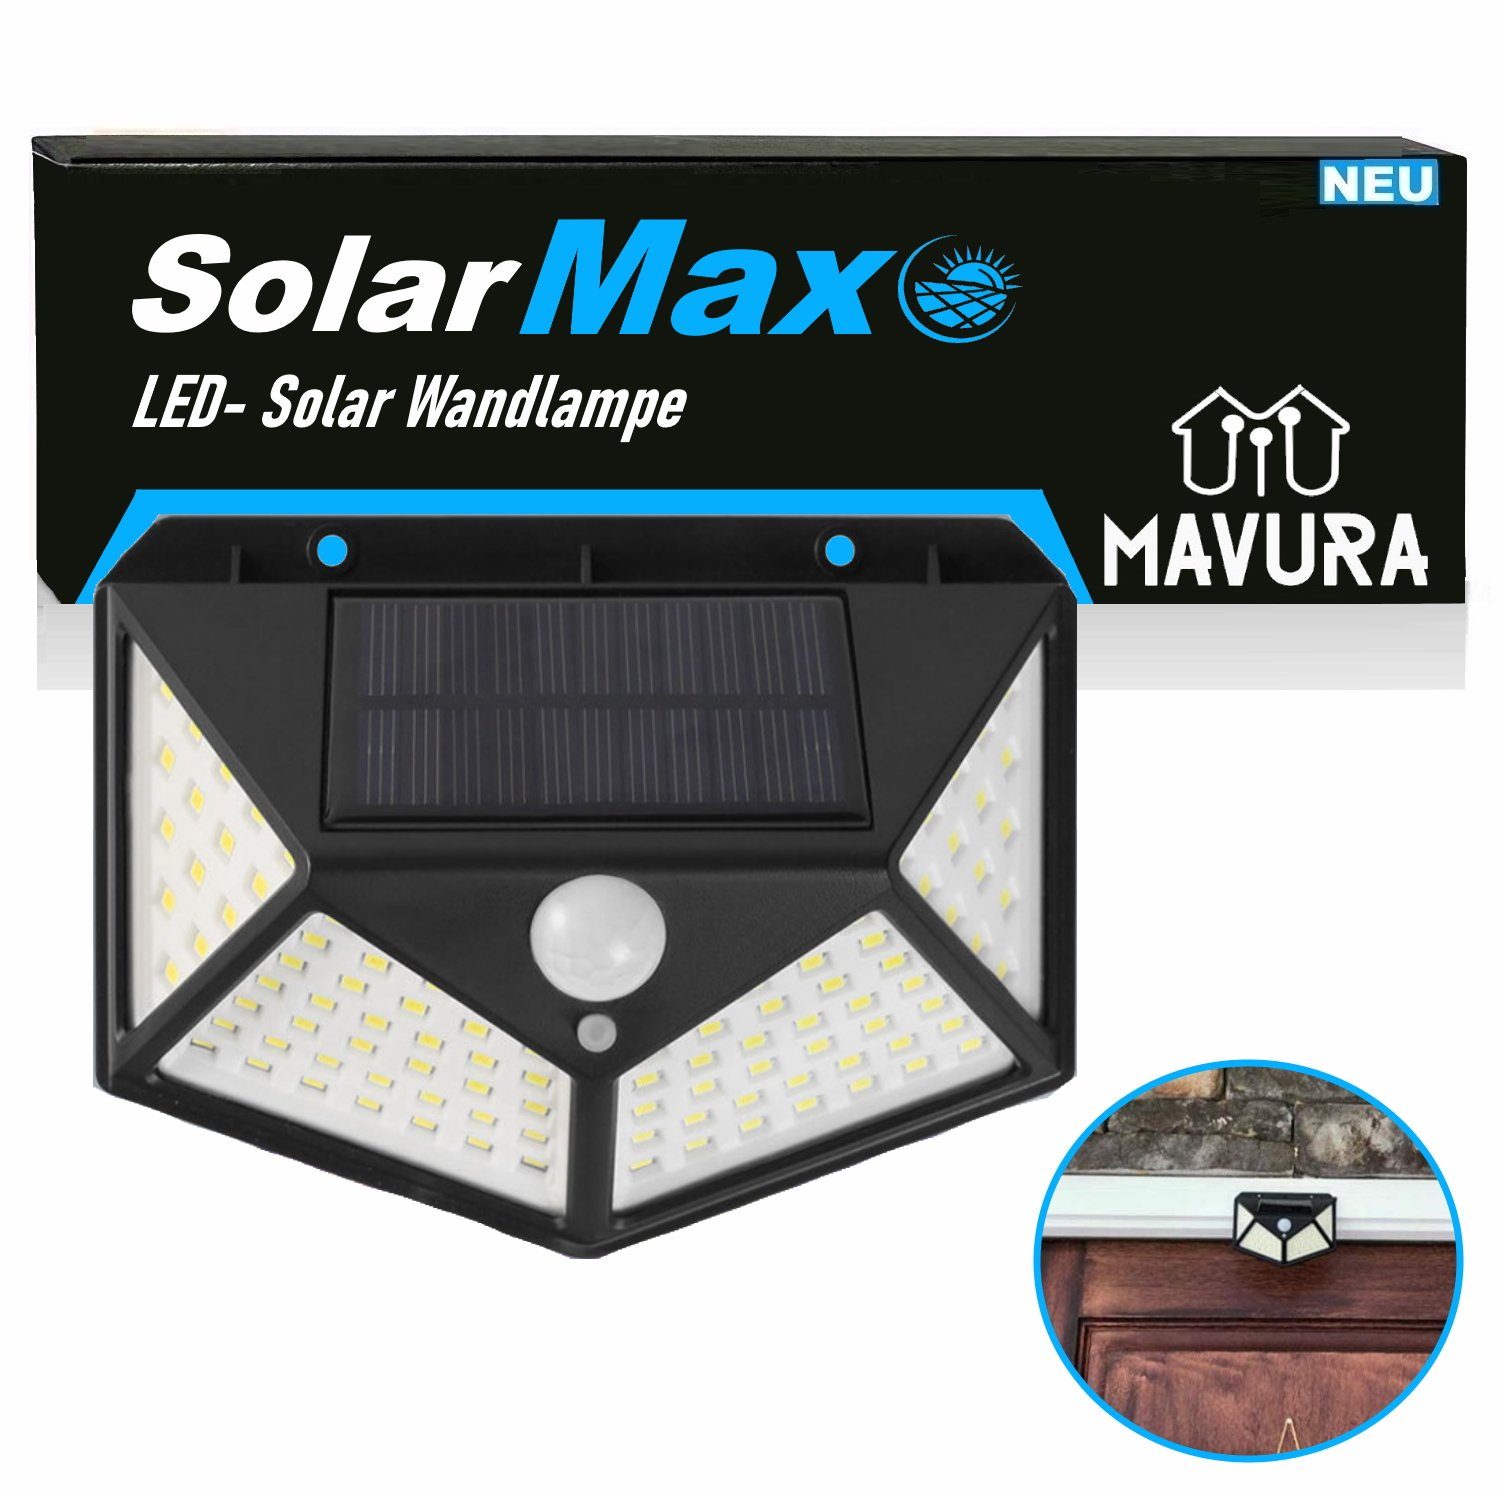 MAVURA LED Solarleuchte 308 270° LED für Gartenleuchte Solar Solarlampe, Wandleuchte Zaunleuchte mit LED SolarMAX Außen Wandlampe Bewegungsmelder